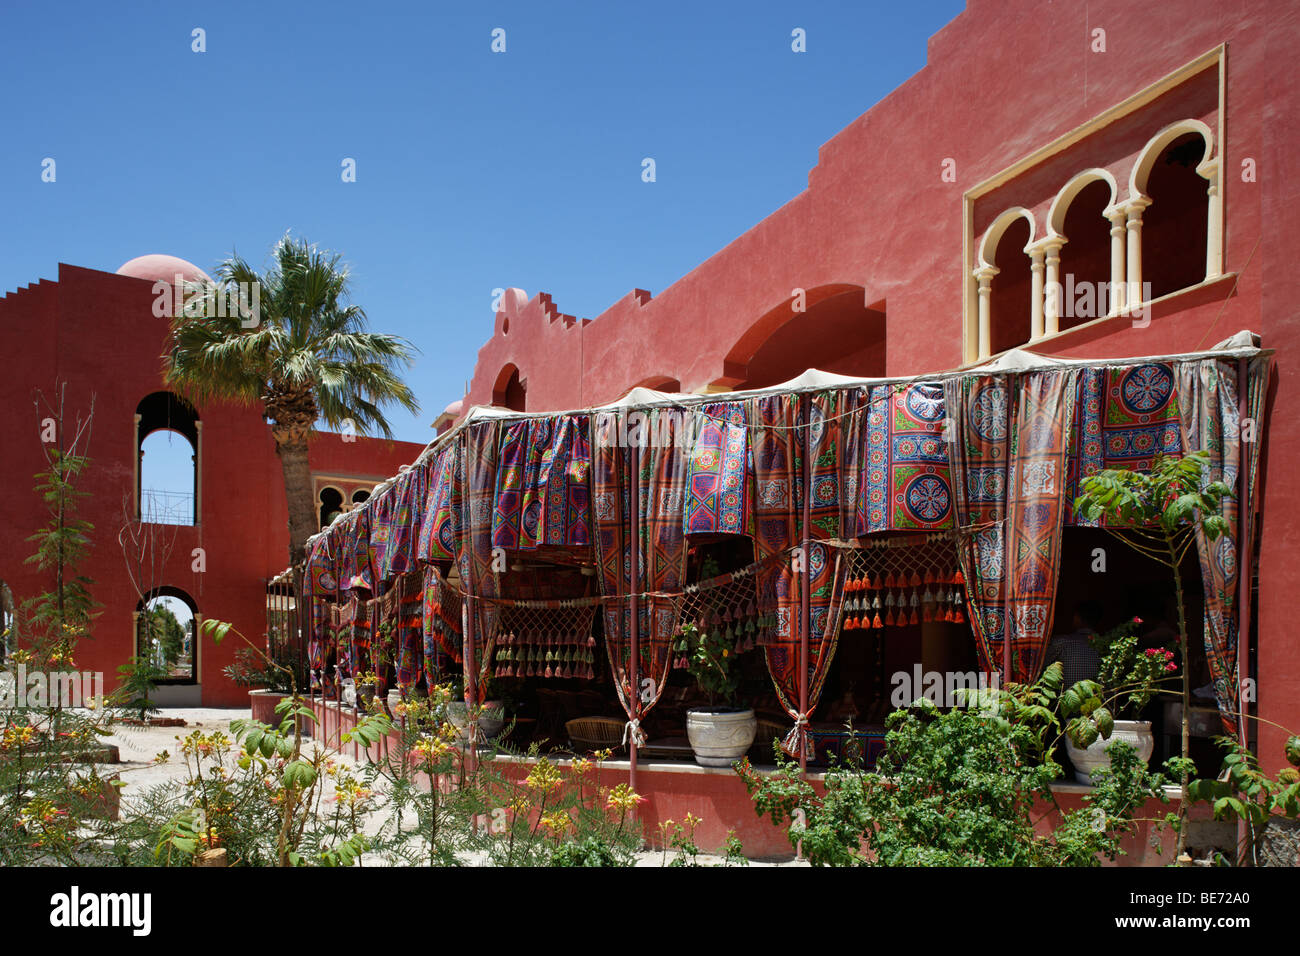 Ristorante tradizionale, giardino, rosso, panno, Yussuf Afifi road, Hurghada, Egitto, Mare Rosso, Africa Foto Stock